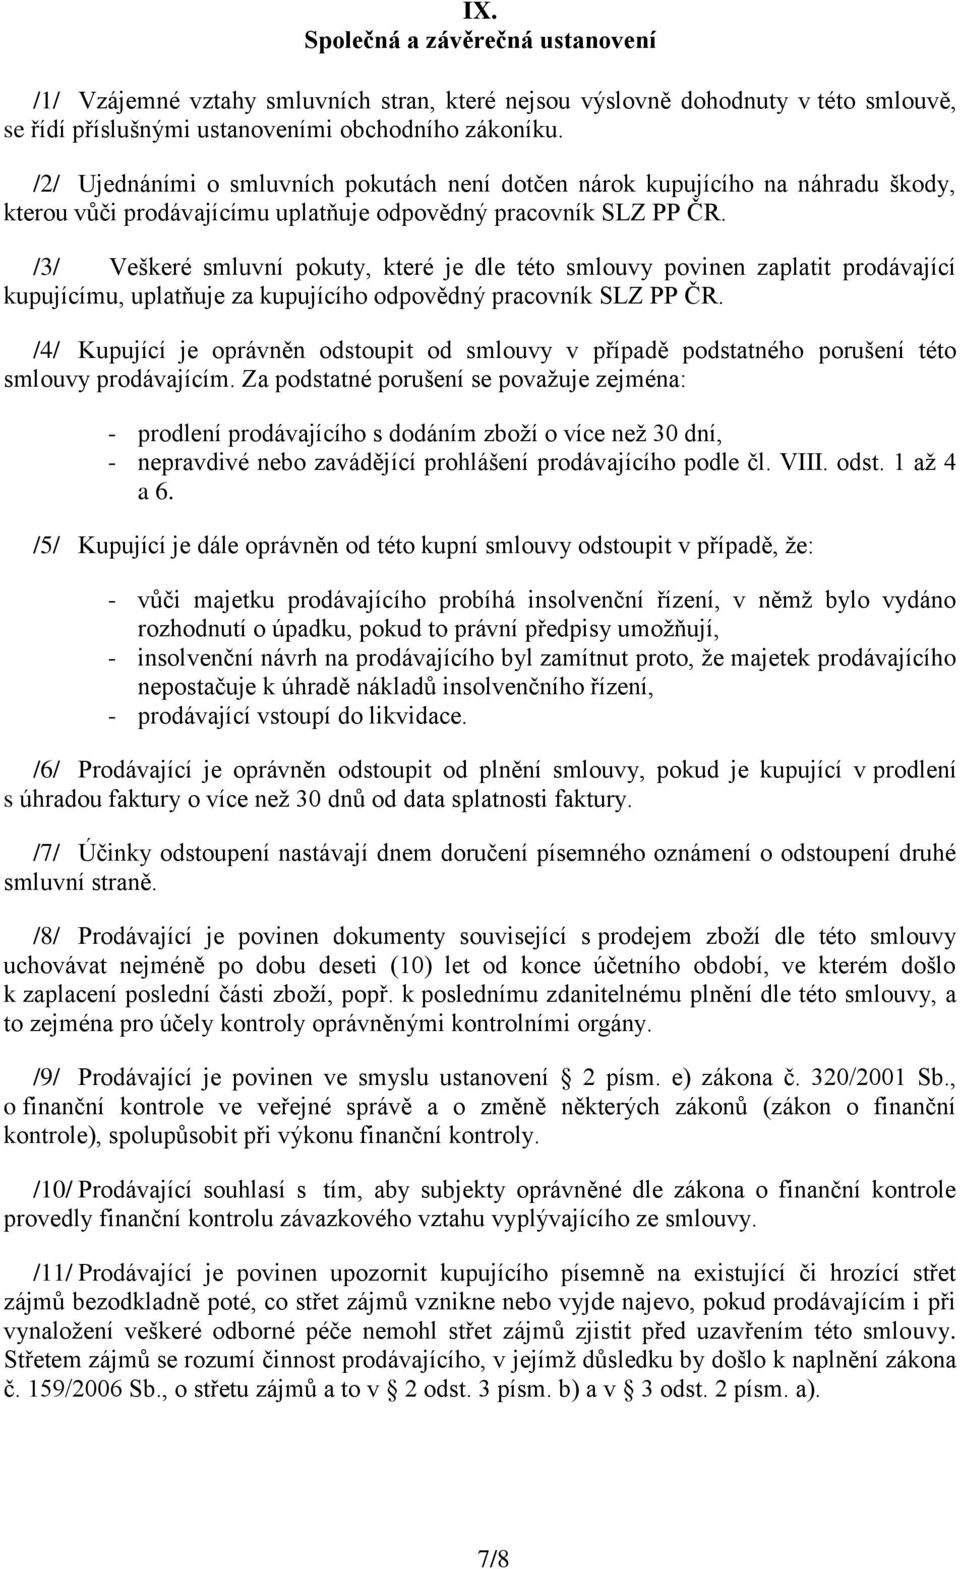 /3/ Veškeré smluvní pokuty, které je dle této smlouvy povinen zaplatit prodávající kupujícímu, uplatňuje za kupujícího odpovědný pracovník SLZ PP ČR.